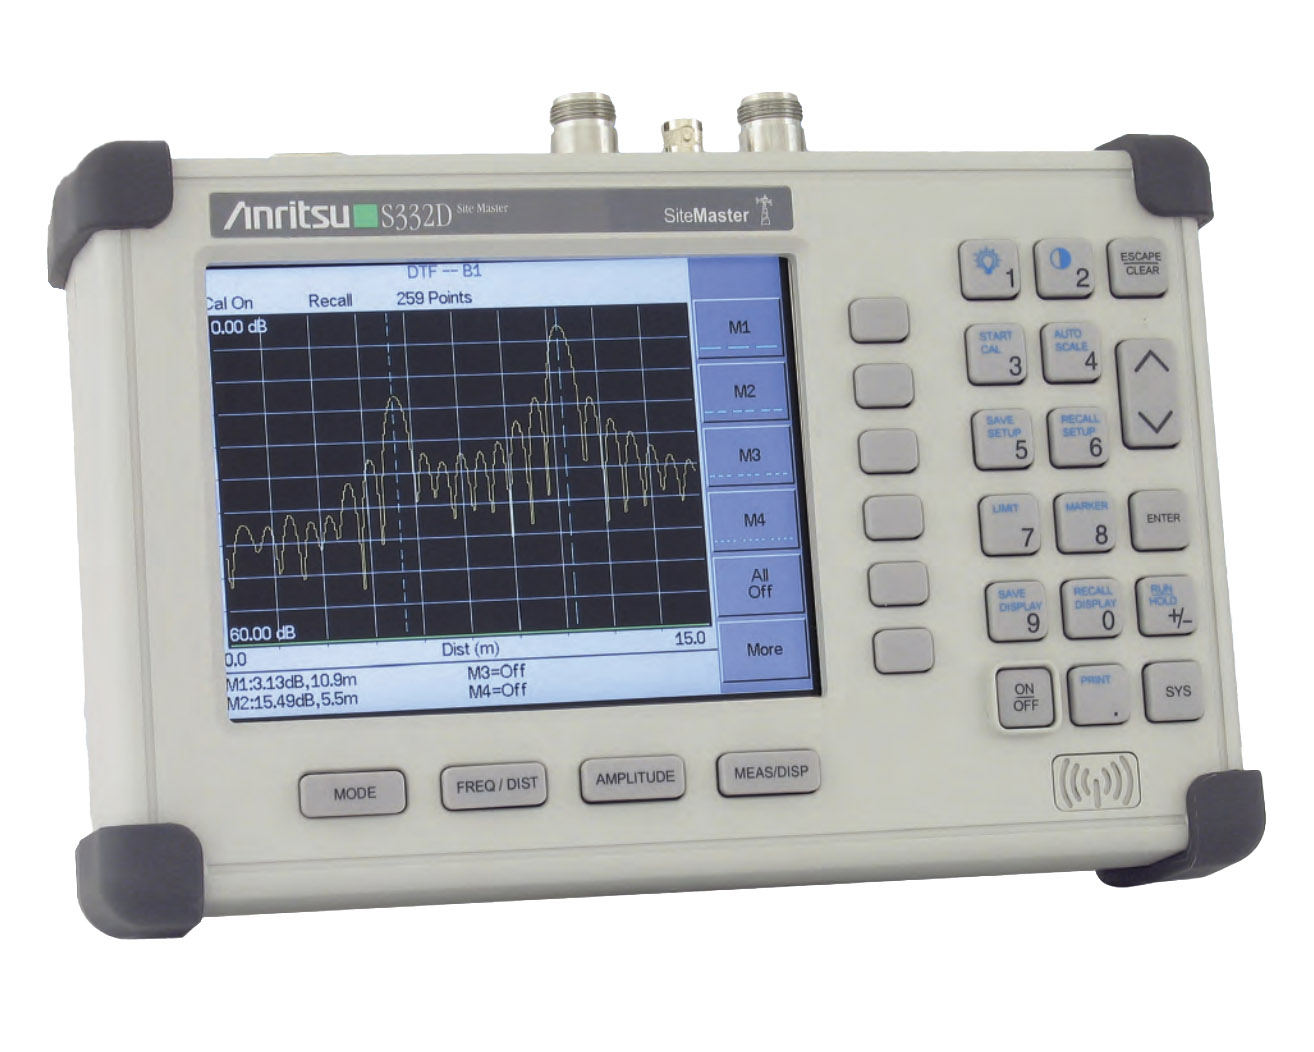 Anritsu Site Master S332Dпортативный анализатор АФУ до 4 ГГц / анализатор спектра до 3 ГГц
 

 В комплекте с опциями: 


	3 — Цветной дисплей
	19 — Высокоточный измеритель мощности
21 — Измеритель передачи
25 — Анализ интерференции (помех), спектрограмма
27 — Сканер каналов
29 — Измеритель мощности, не требует внешнего детектора
S332D/RUS — Русифицированный интерфейс прибора

 

 Стоимость указана в Рублях DDP Москва по безналичному расчету без НДС
